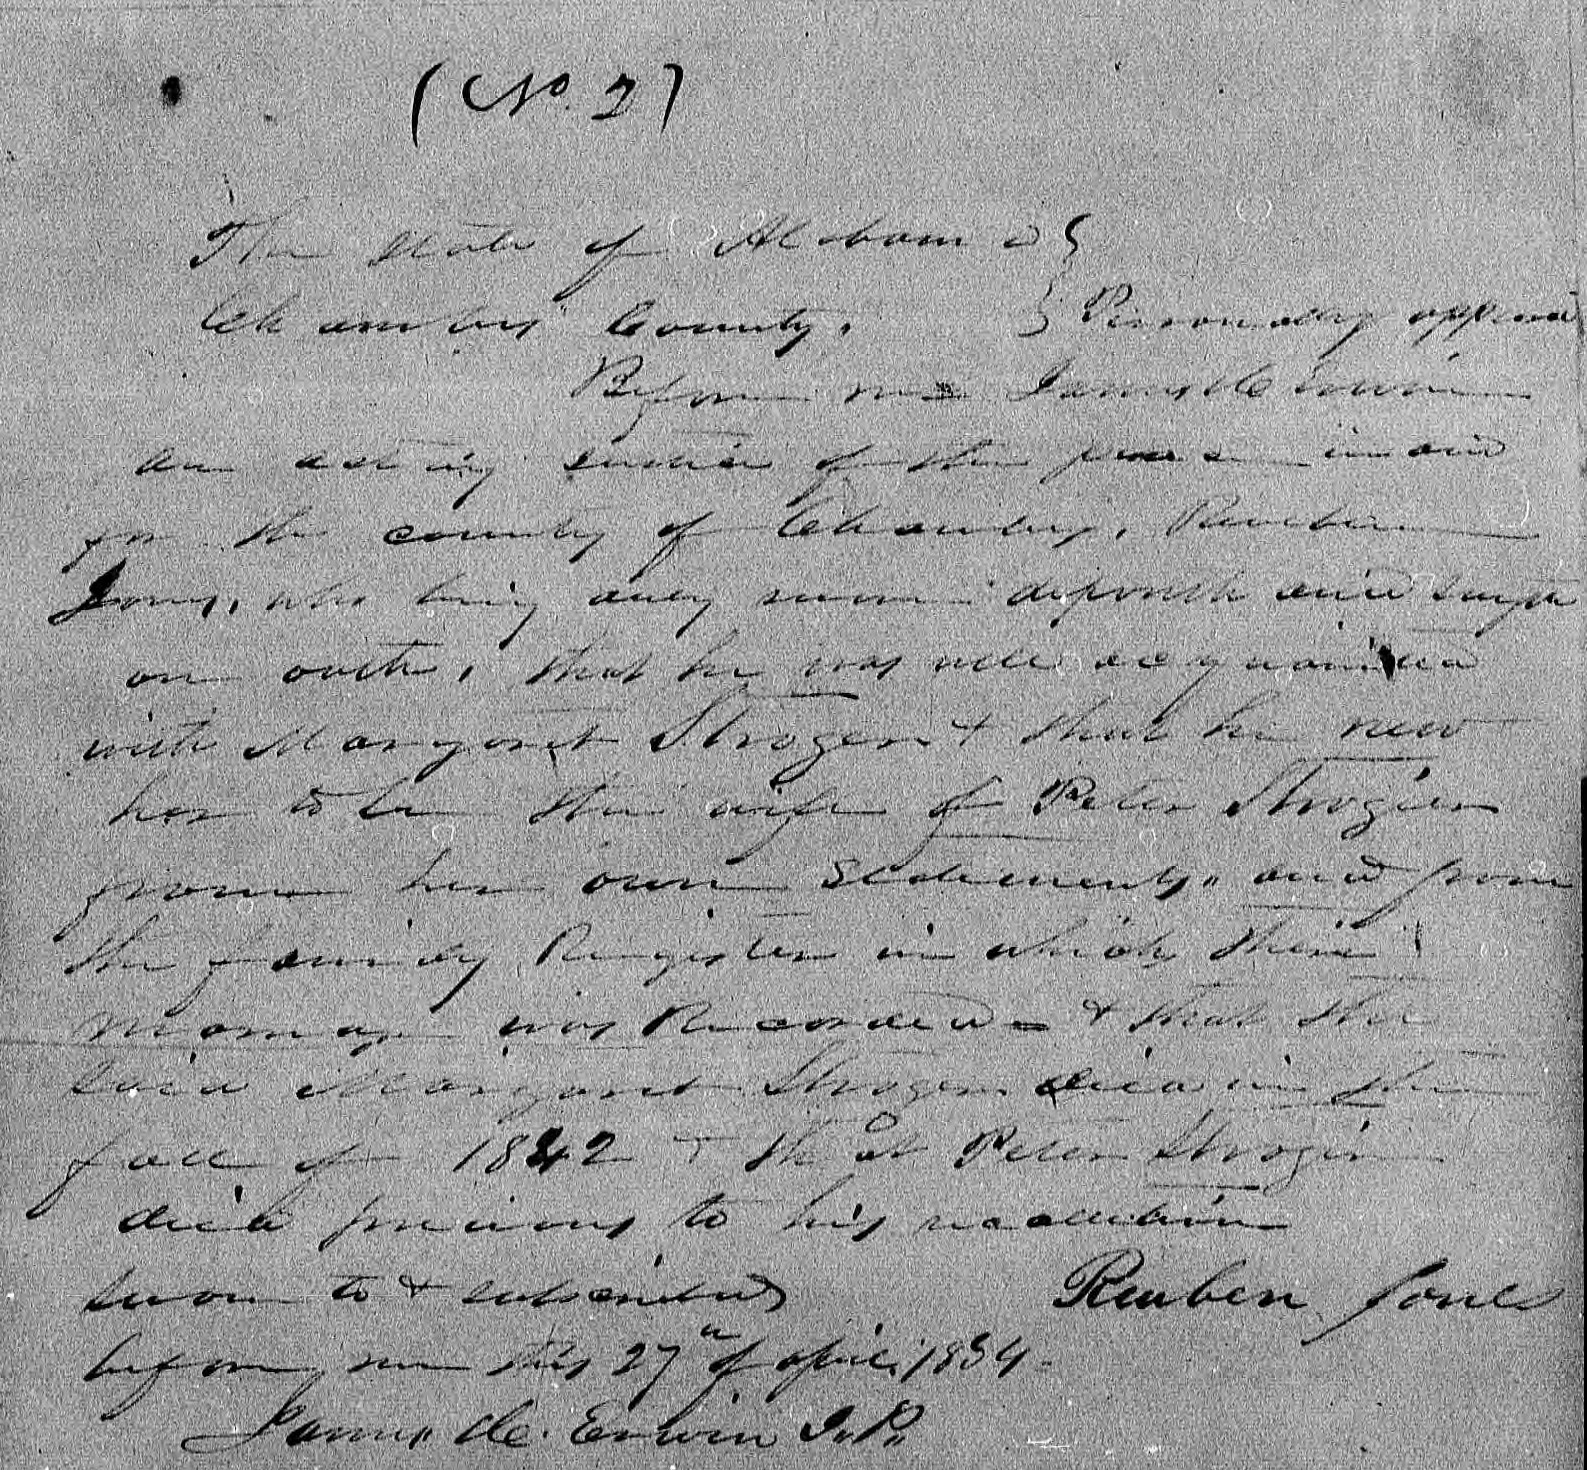 Affidavit of Reuben Jones in support of a Pension Claim for James H. Erwin, 27 April 1854